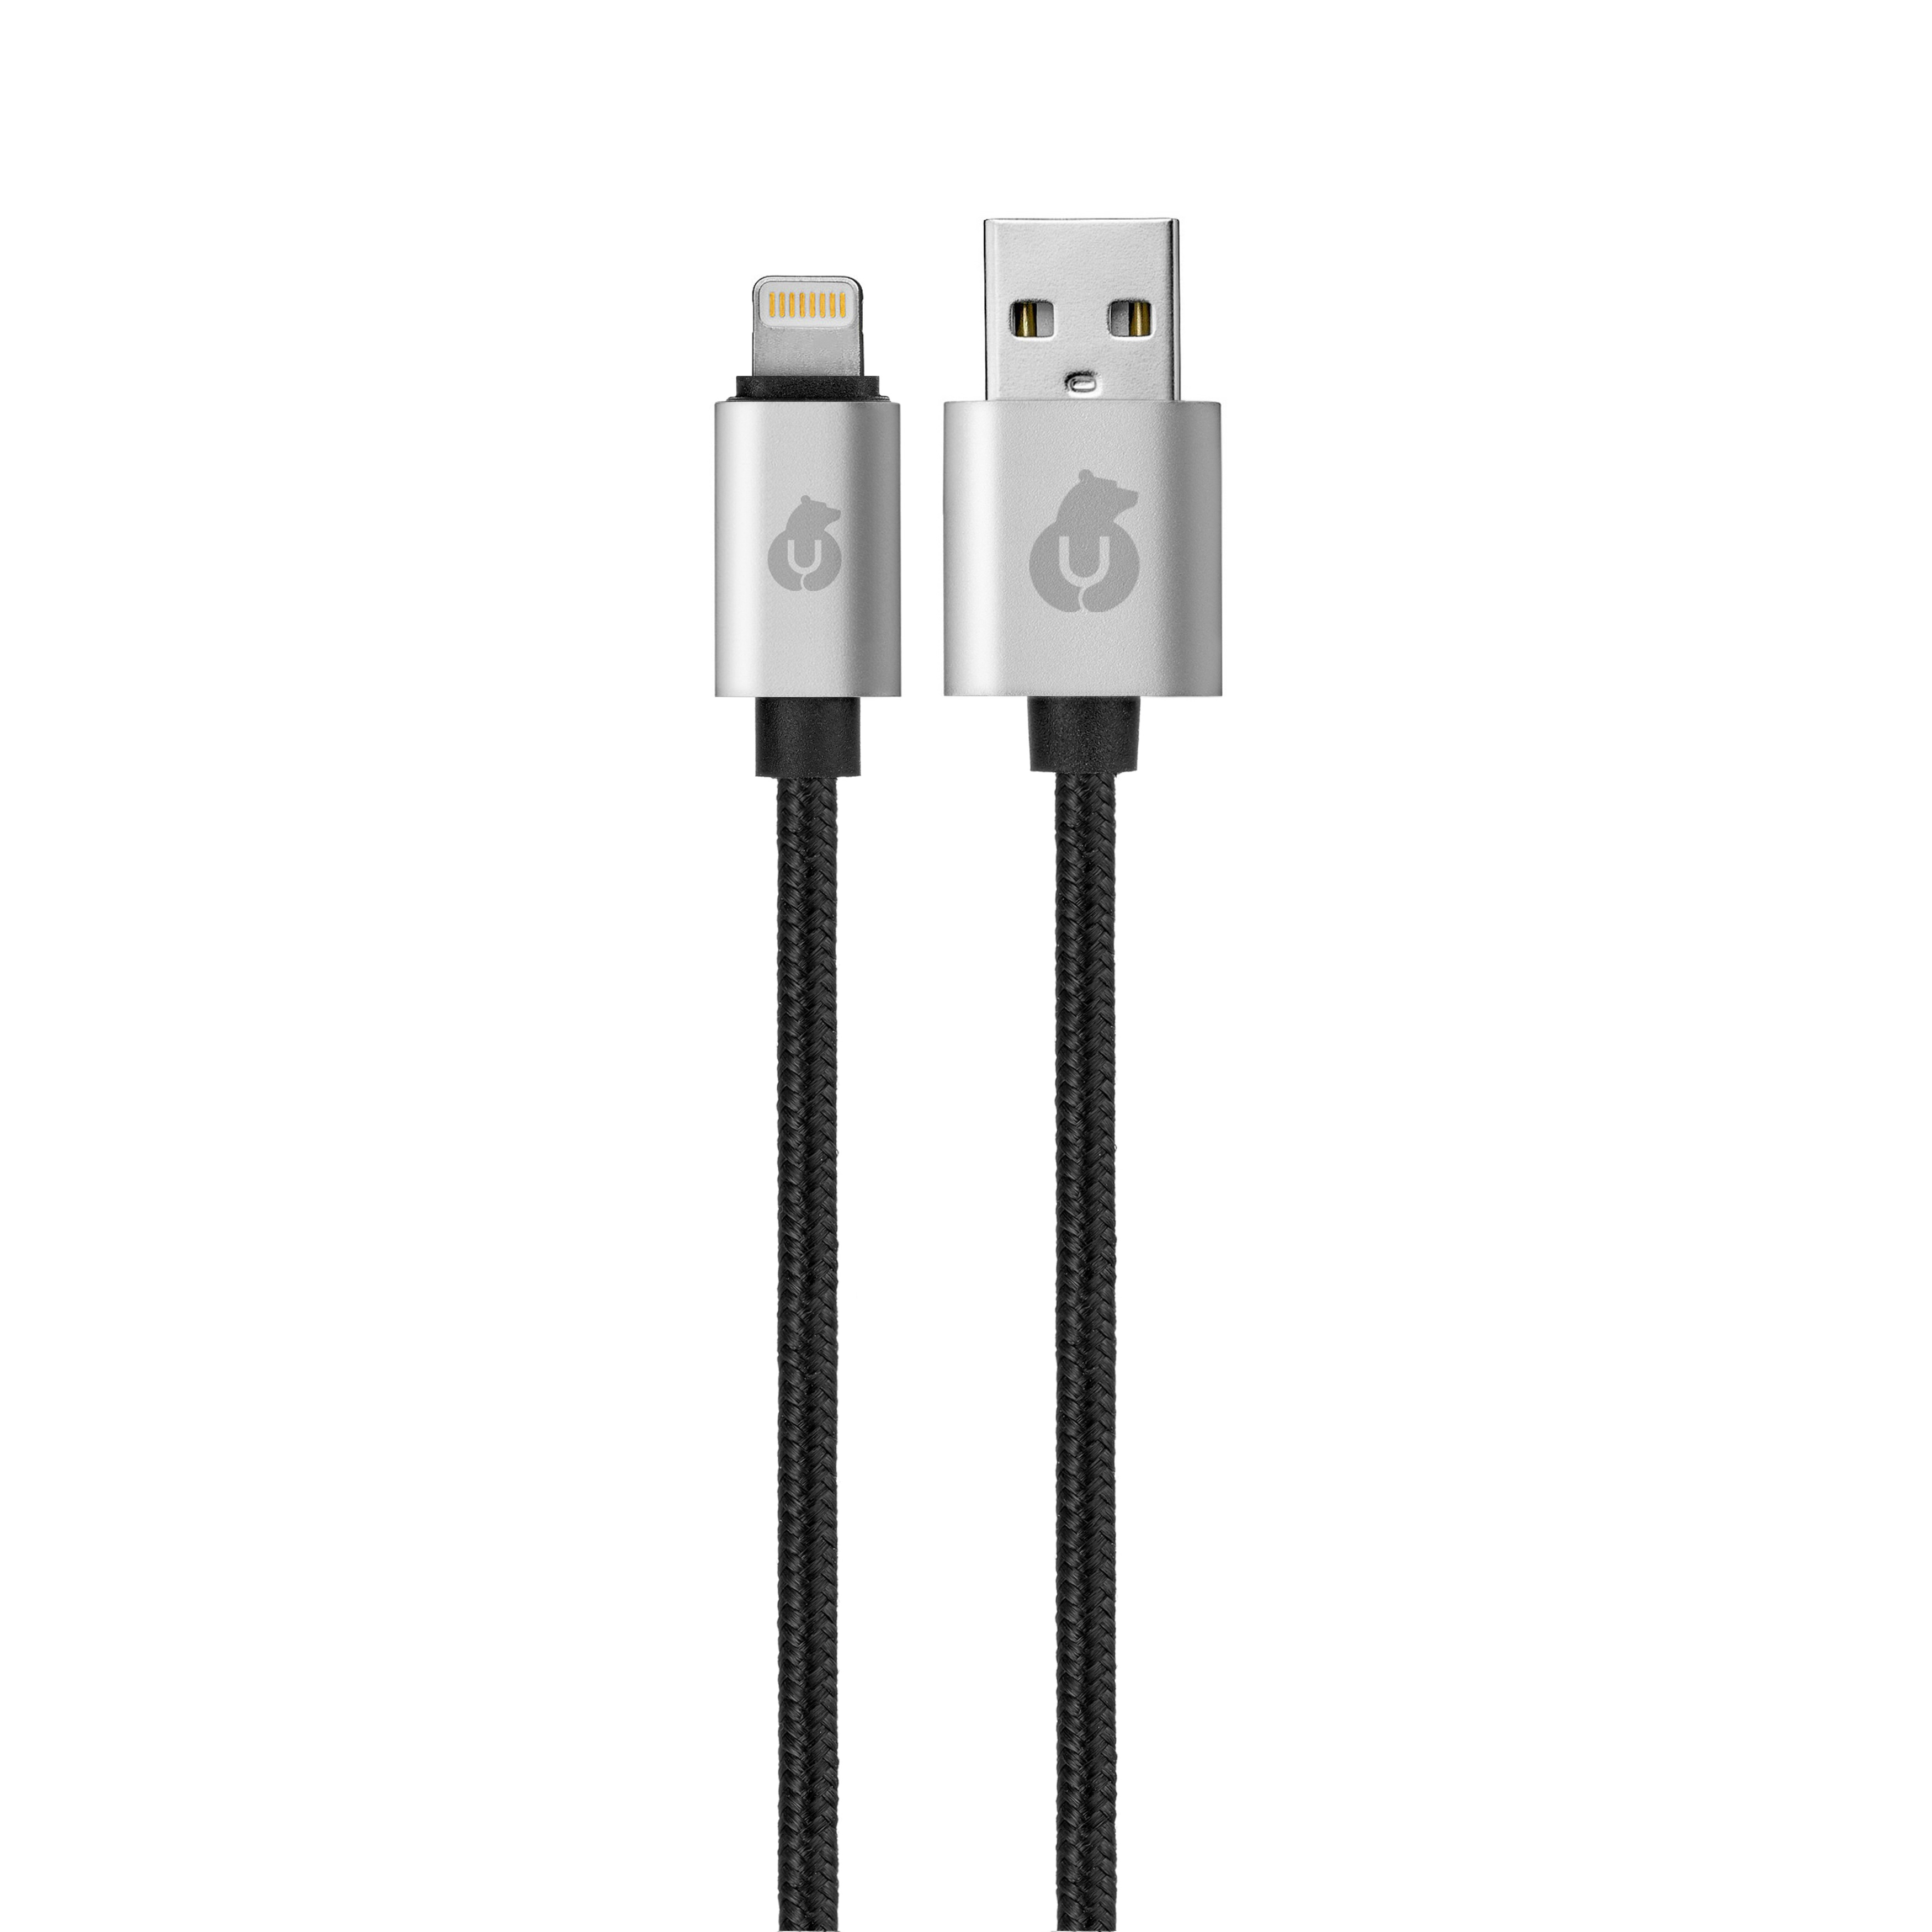 Зарядный кабель CORD Lightning USB Cable, 1,0 m, чёрный